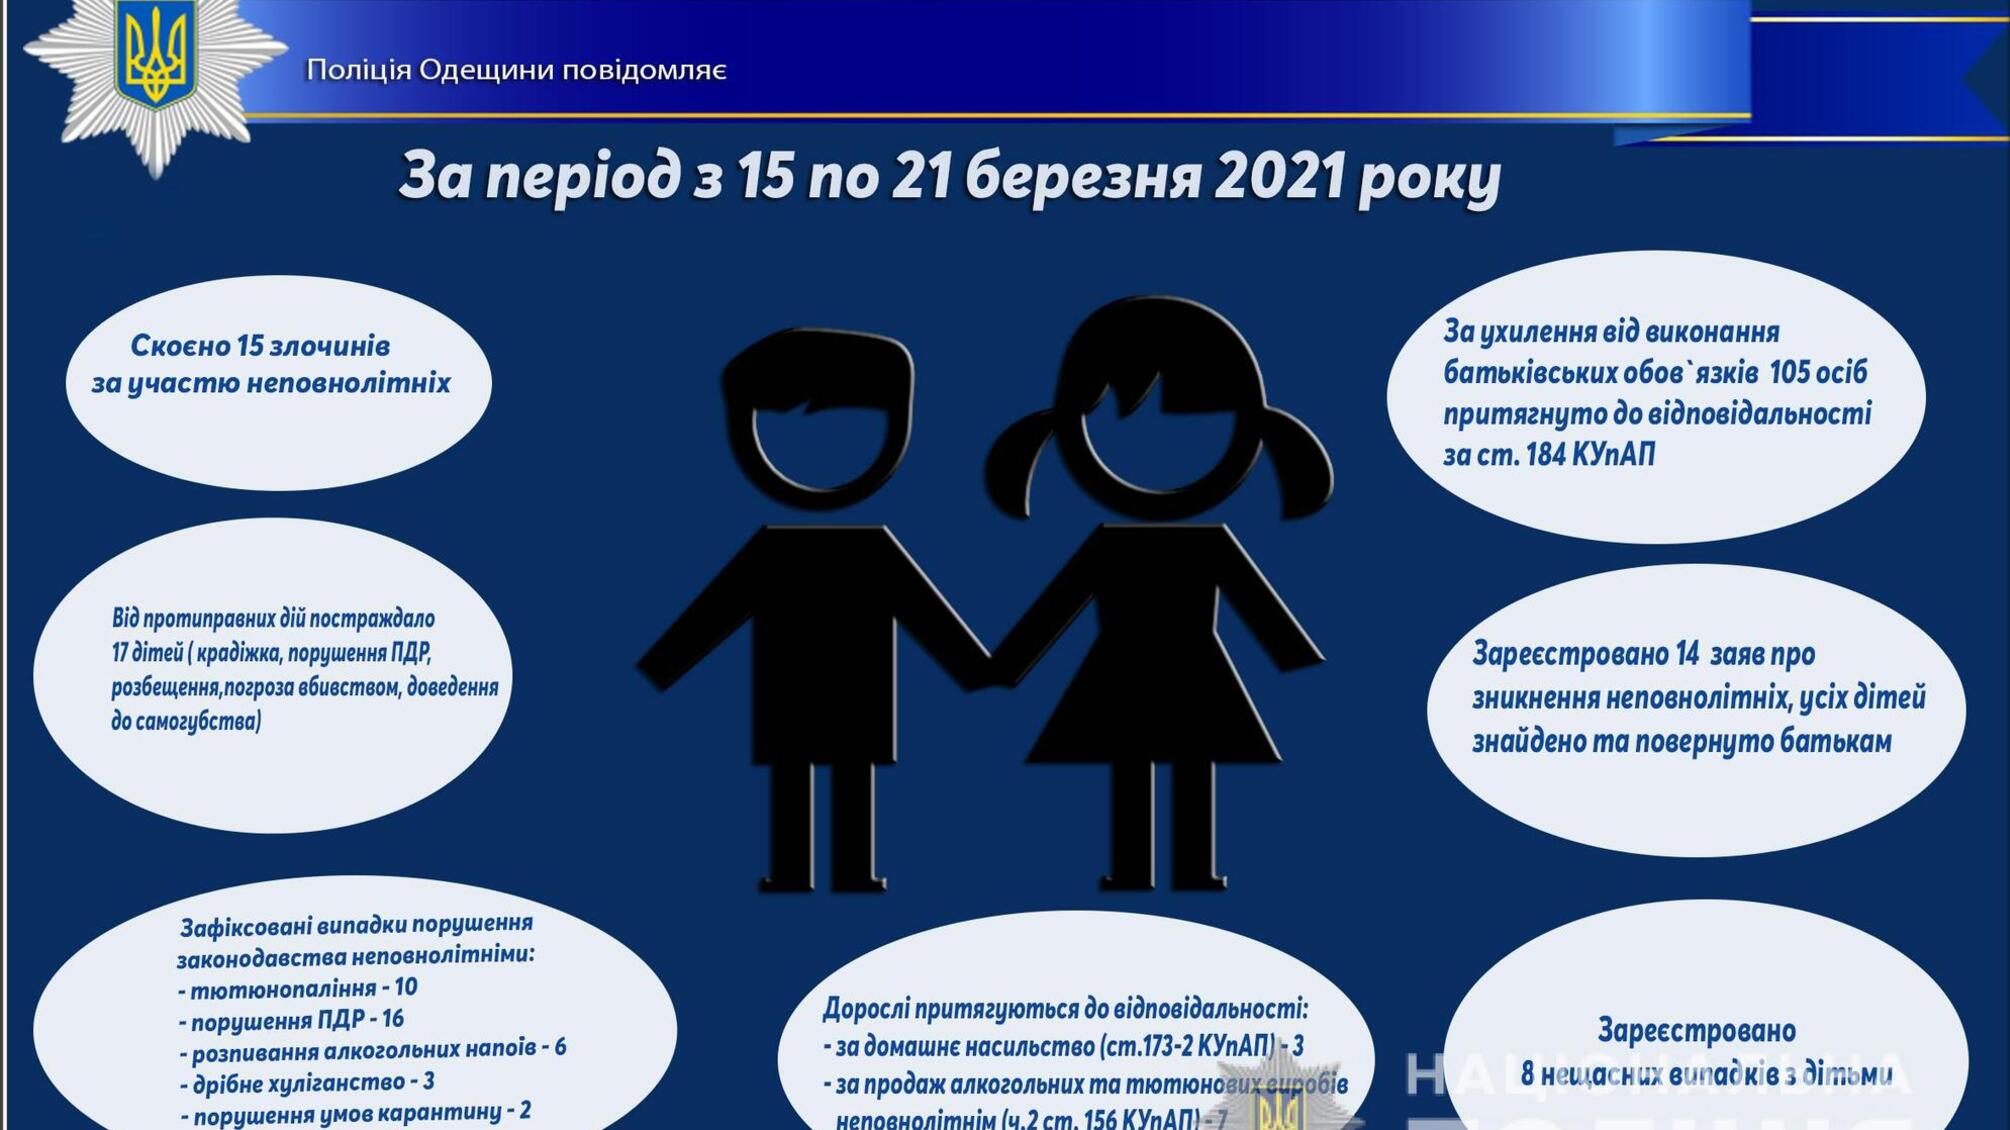 Про стан роботи поліції Одещини з протидії порушенням законодавства неповнолітніми та відносно них за період з 15 по 21 березня 2021 року